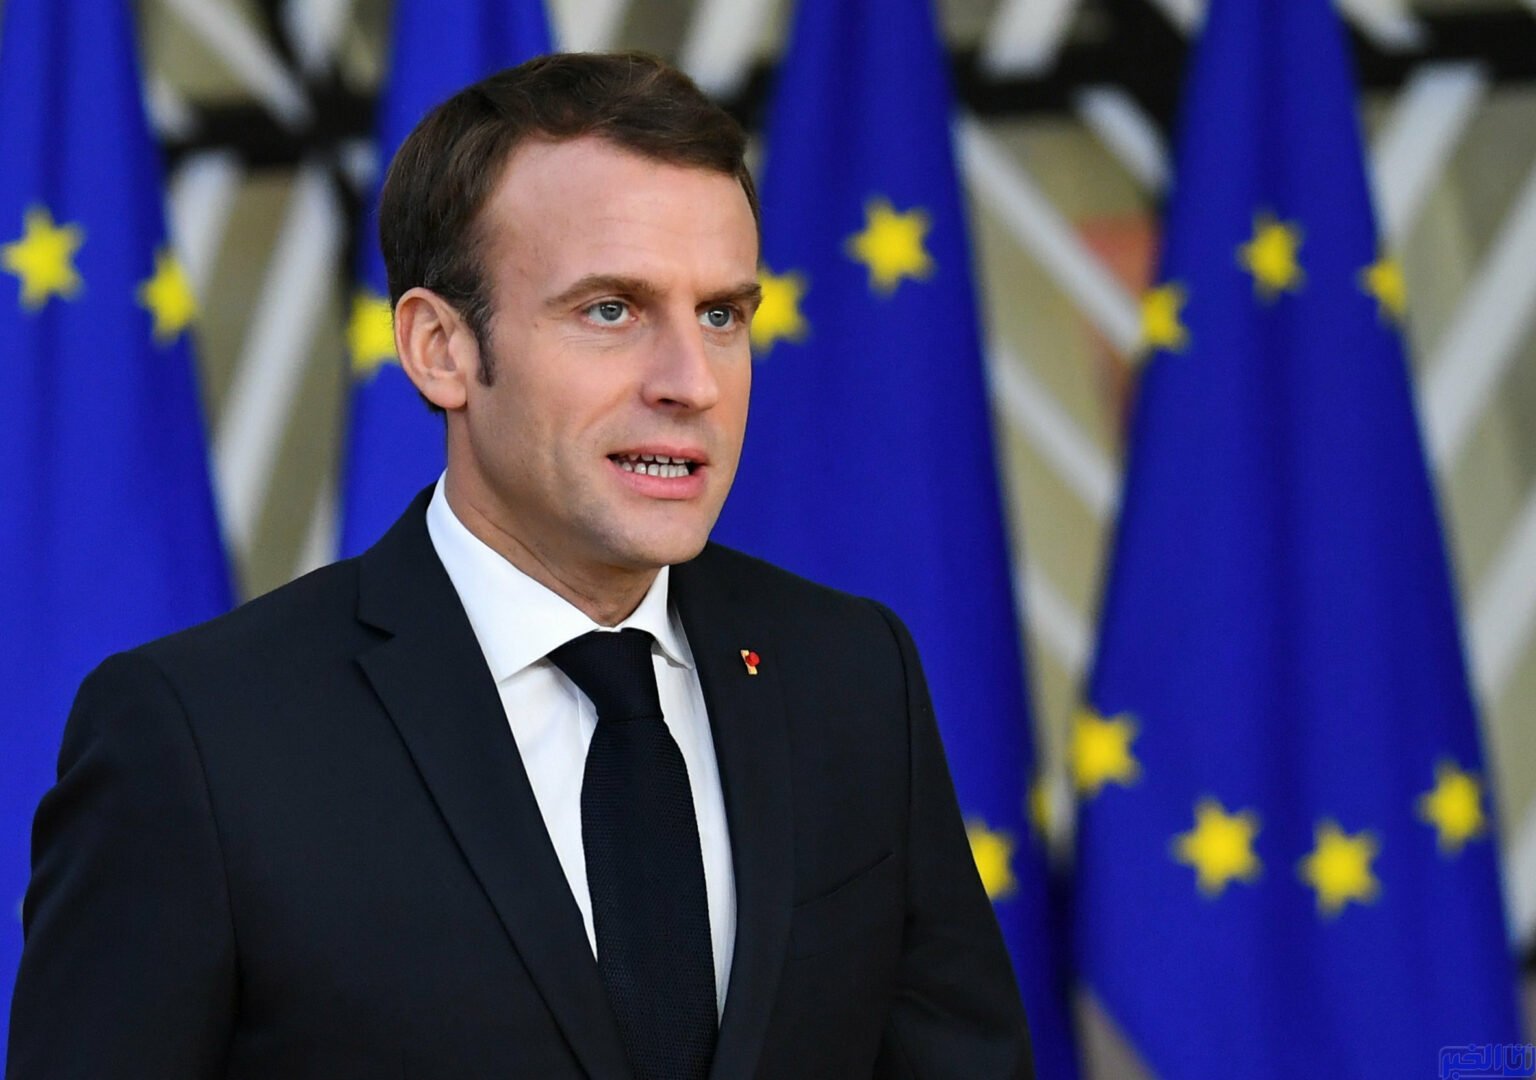 رد قاسٍ ومُوجع على الرئيس الفرنسي ماكرون